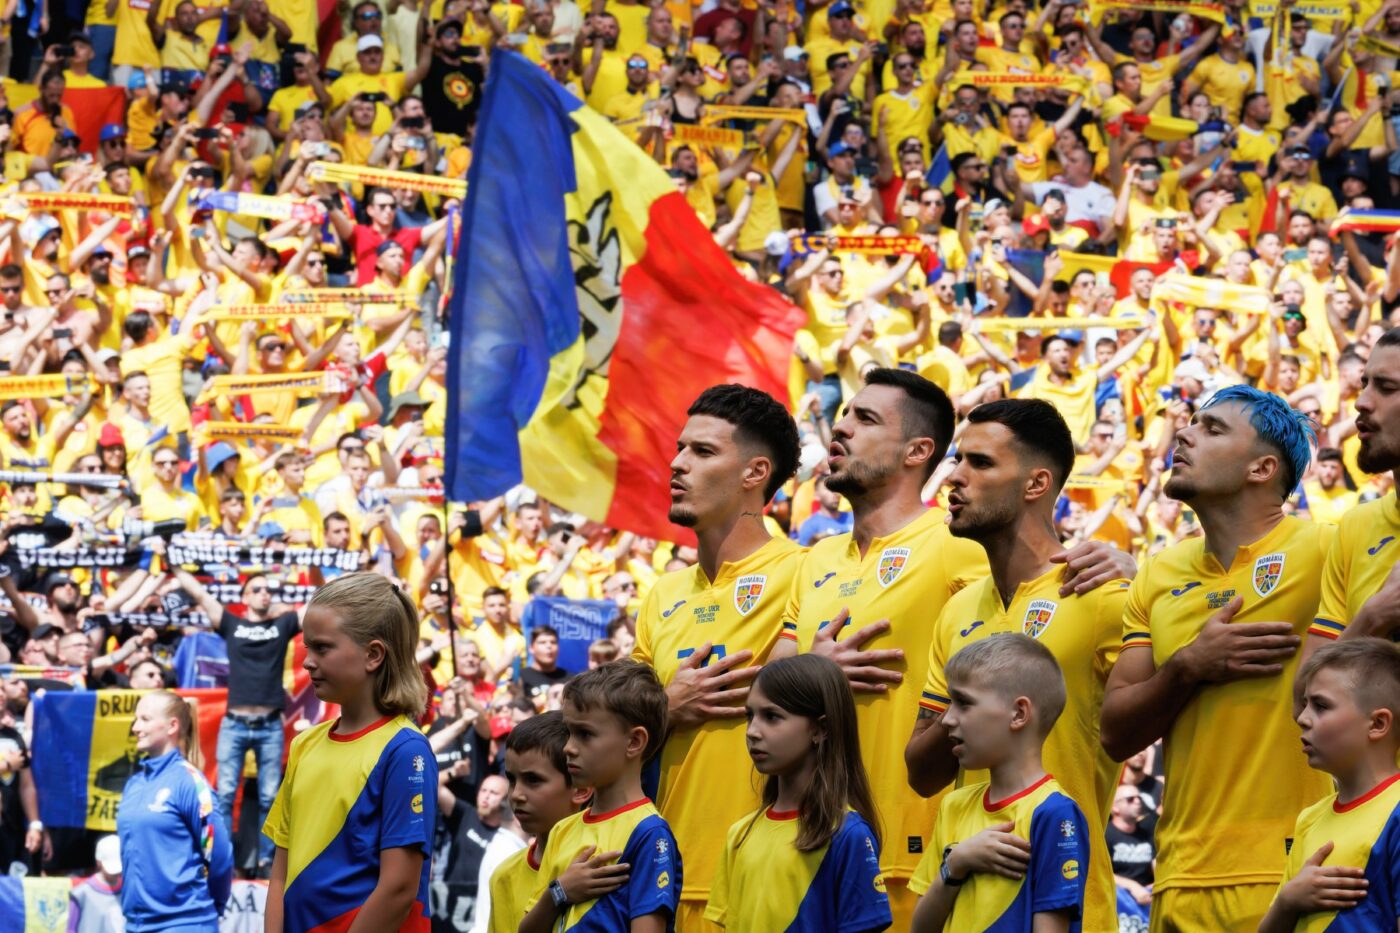 Presa din Germania a reactionat dupa ce a auzit 40.000 de romani in timp ce scandau asta la meciul Romania - Ucraina 3-0